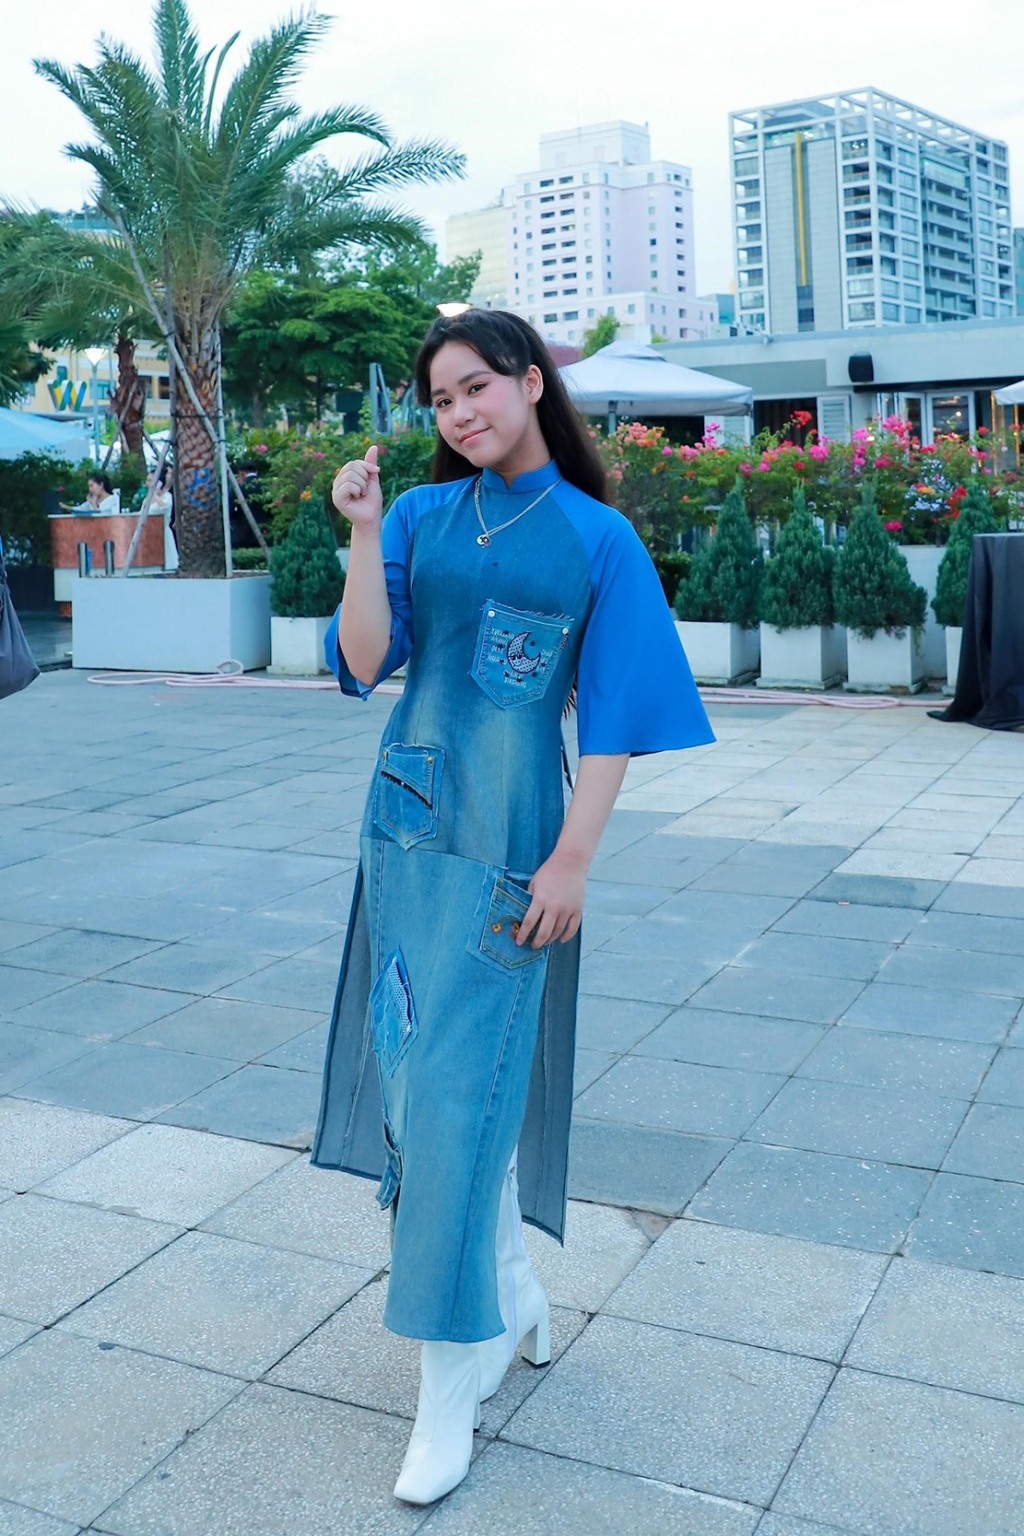 Ra mắt MV bảo vệ môi trường, Bella Vũ diện áo dài Jeans tái chế 'cực chất'